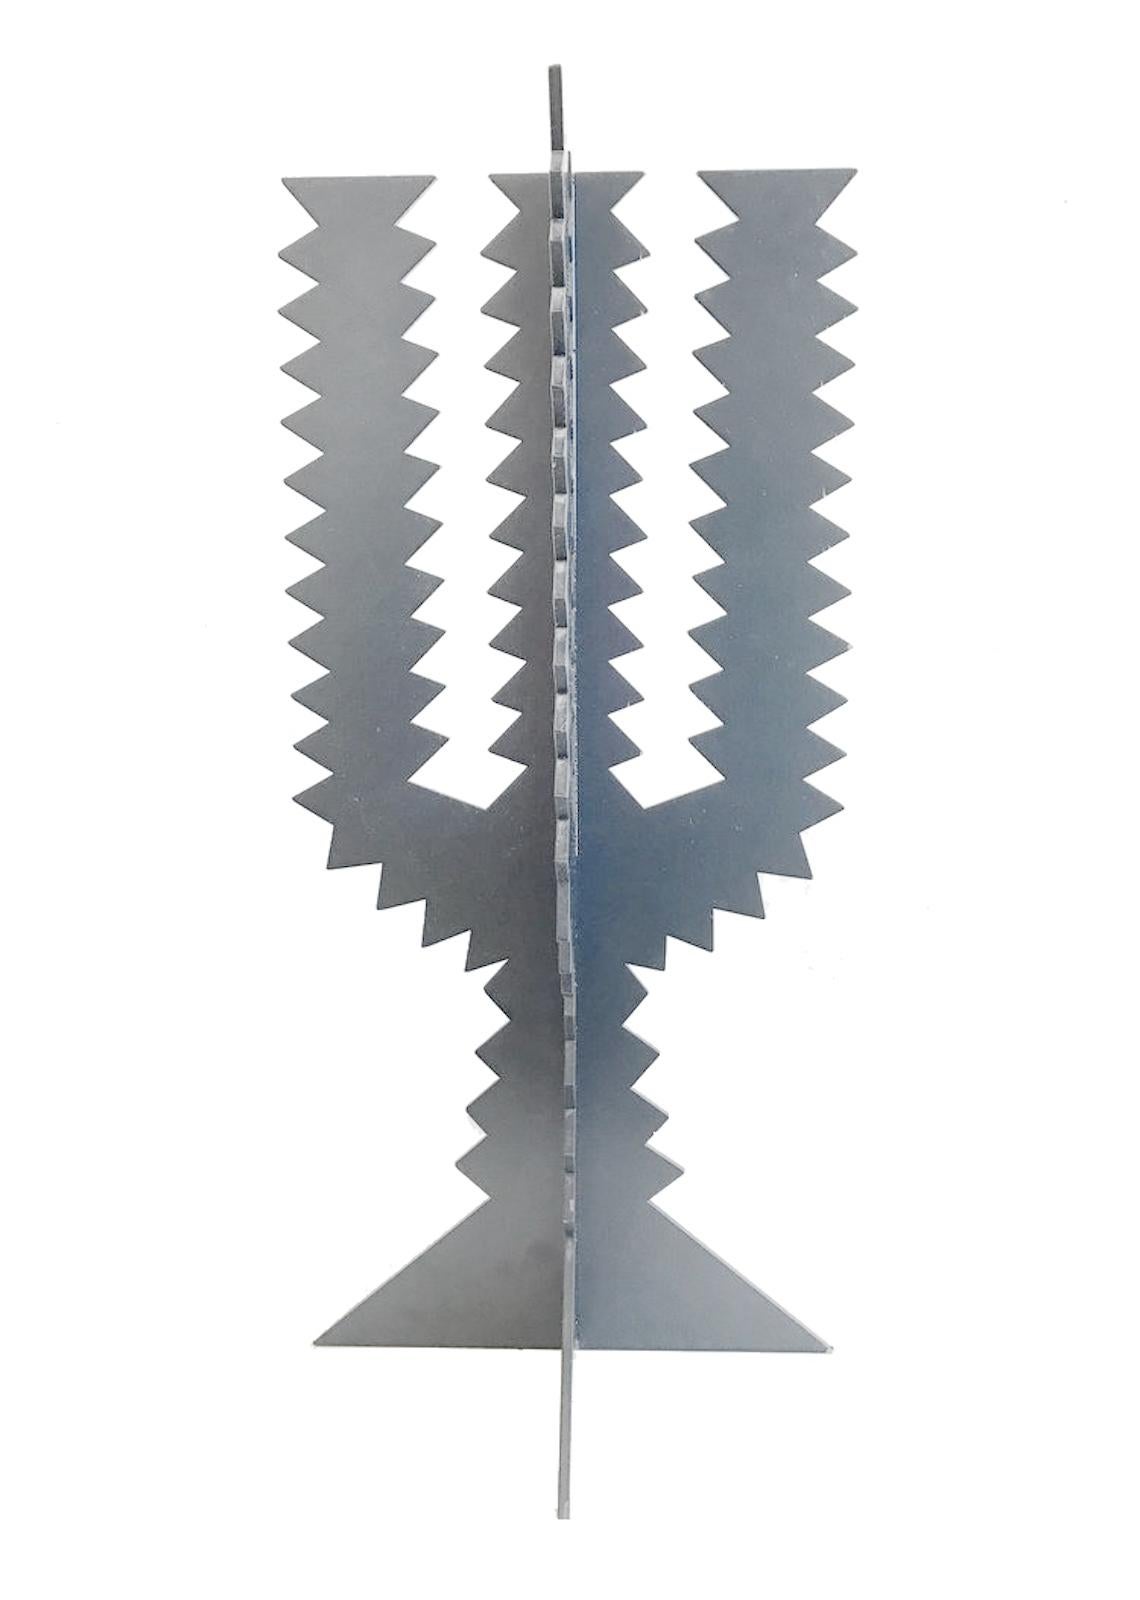 Limitierte Auflage der Stahlskulptur CACTUS (250 Stück).
Unterschrift von Dino Gavina, Centro Duchamp, 